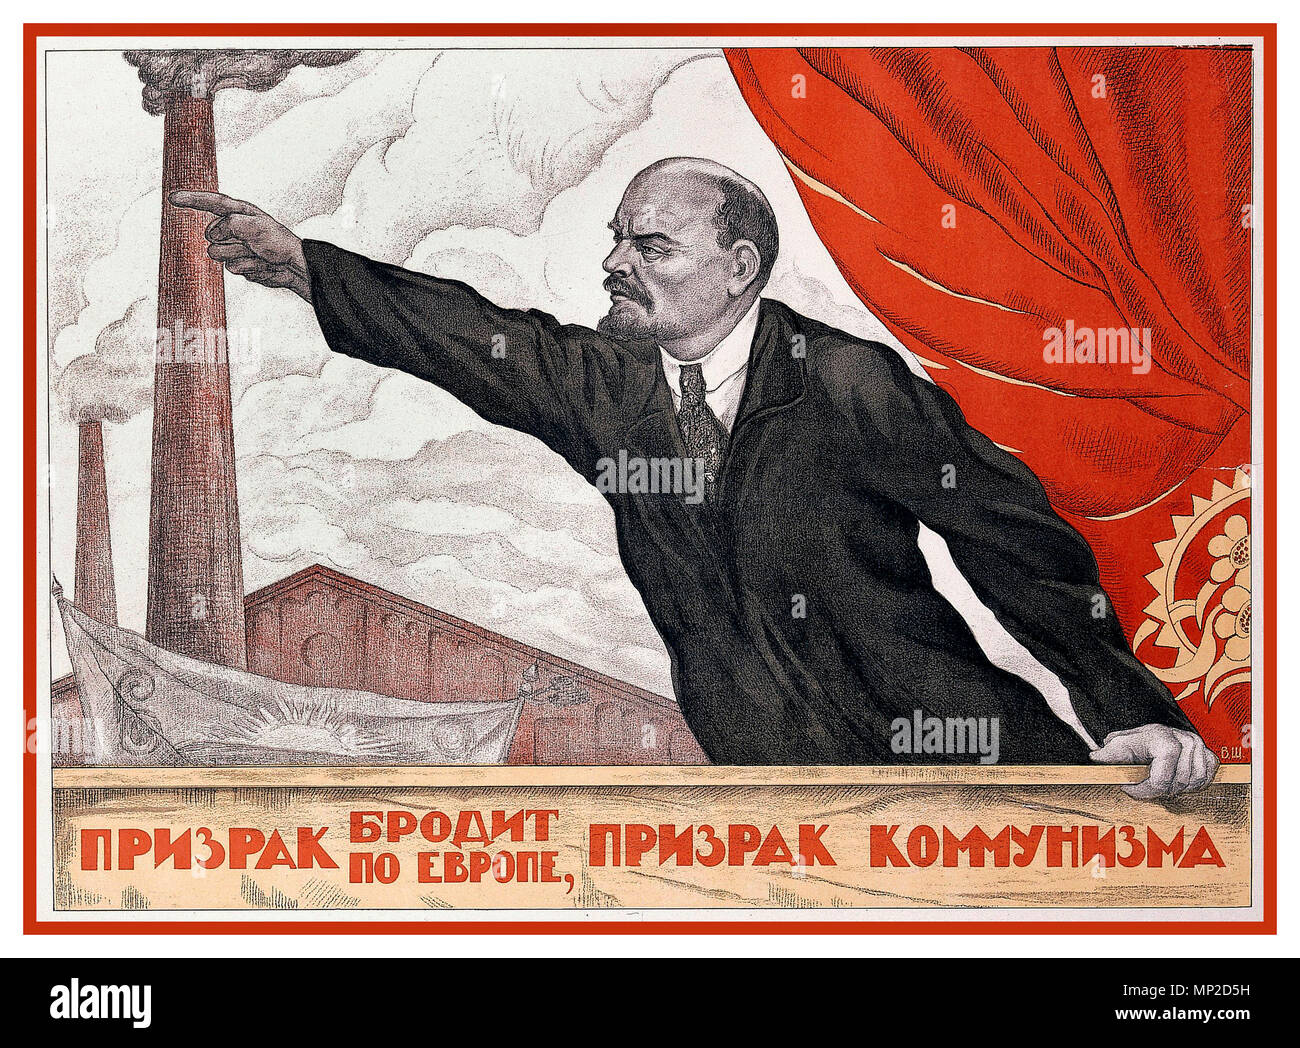 LENIN Vintage 1900 Propagandaplakat Russische Sowjetrevolution Wladimir Lenin ist bekannt für seine Rede- und Aufführungskünste. Rauchschornsteine, die eine industrialisierte Zukunft darstellen, und ein rotes Banner sind gängige Motive in der sowjetischen Propaganda. (Valentin Schtscherbakow, „Ein Gespenst heimgesucht Europa, das Gespenst des Kommunismus“) 1924 Stockfoto